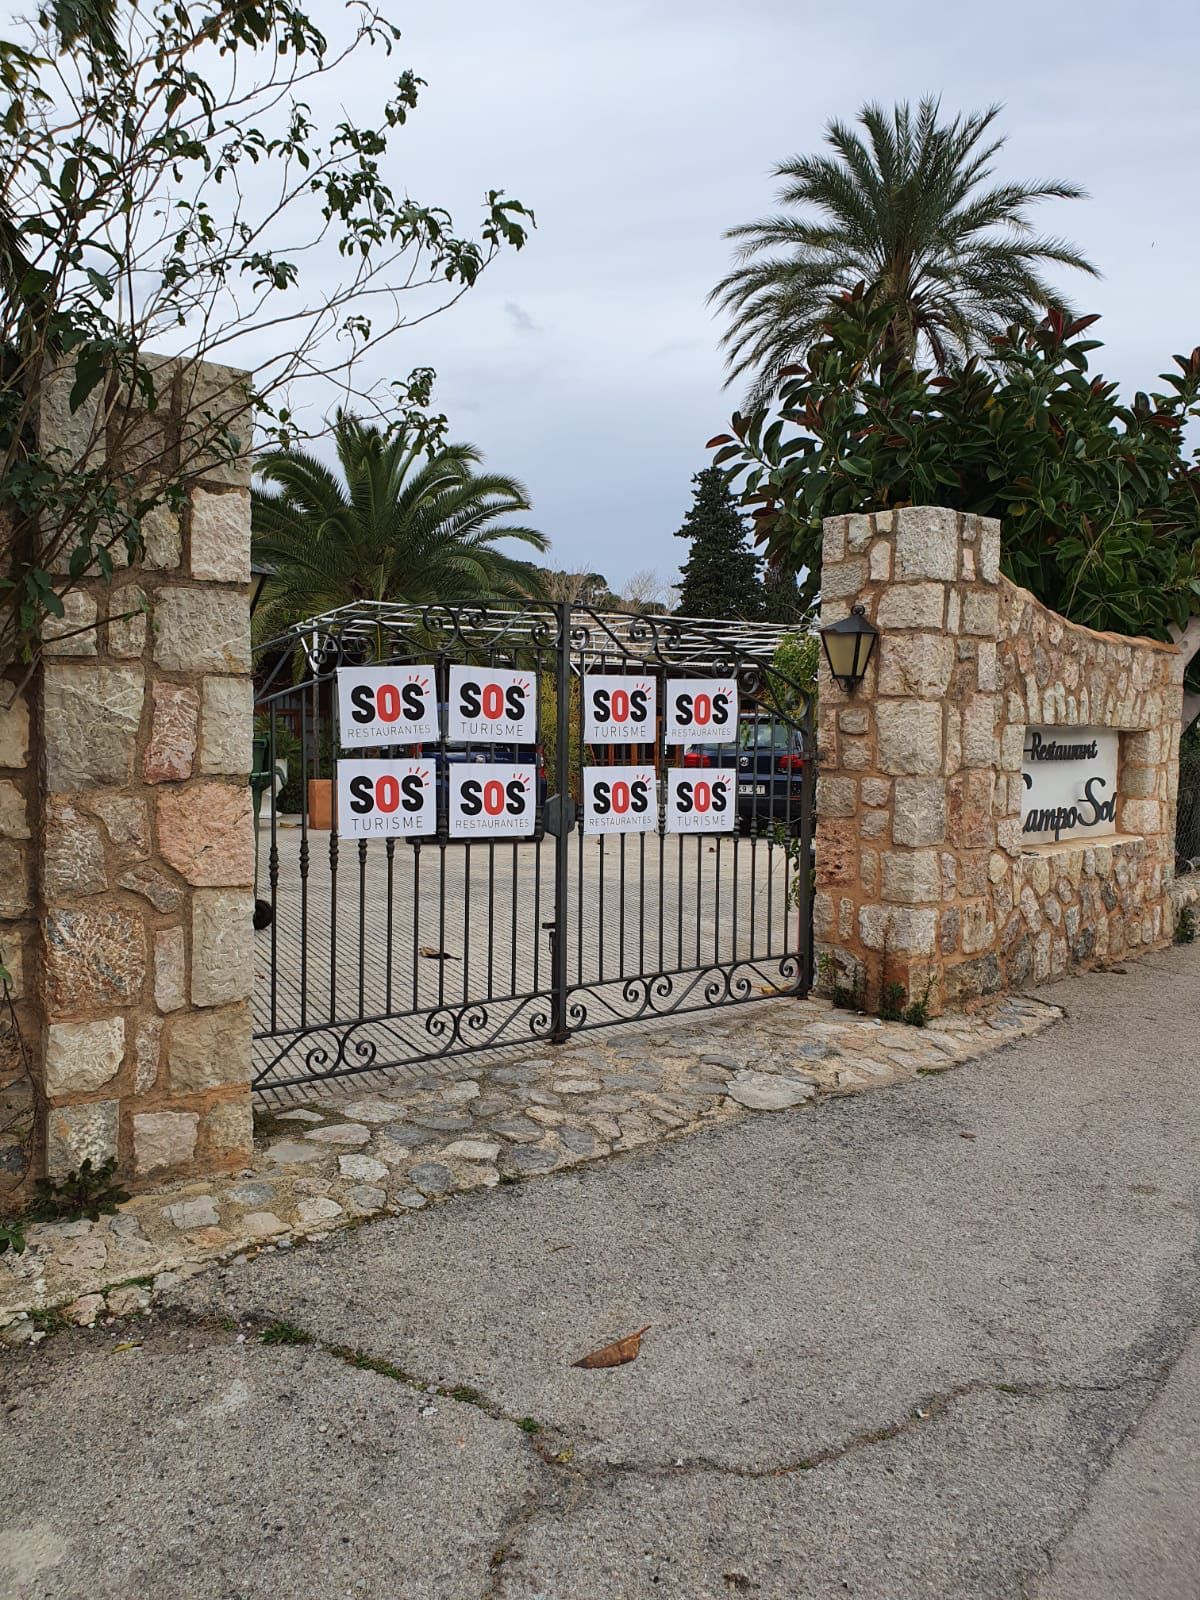 Arranca la campaña SOS Turismo: los hoteles y negocios turísticos de Mallorca ya lucen las pancartas con su lema